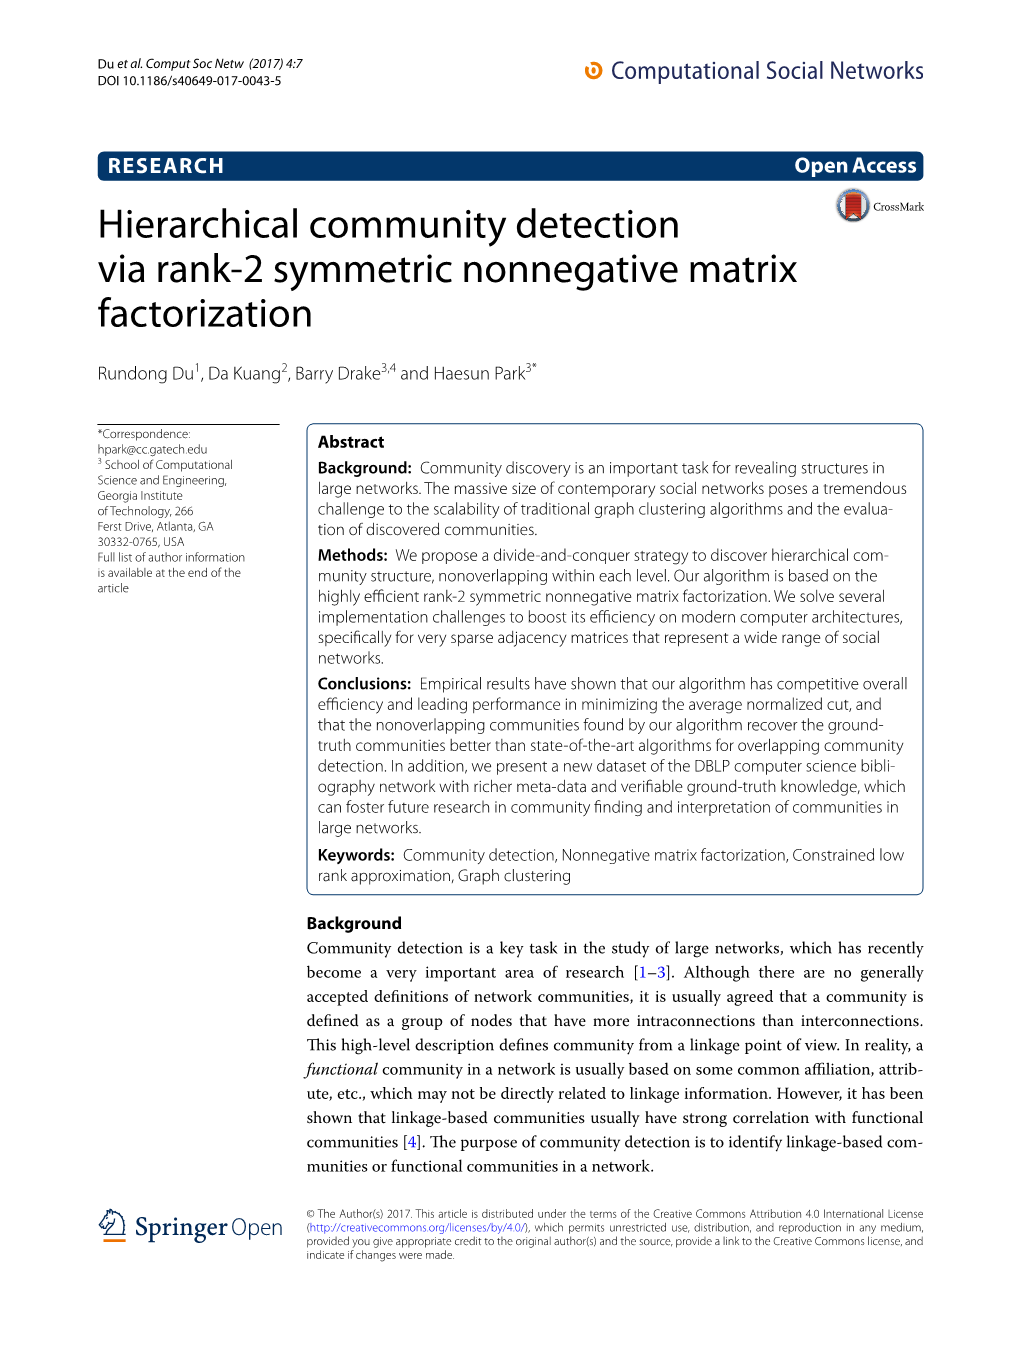 Hierarchical Community Detection Via Rank-2 Symmetric Nonnegative